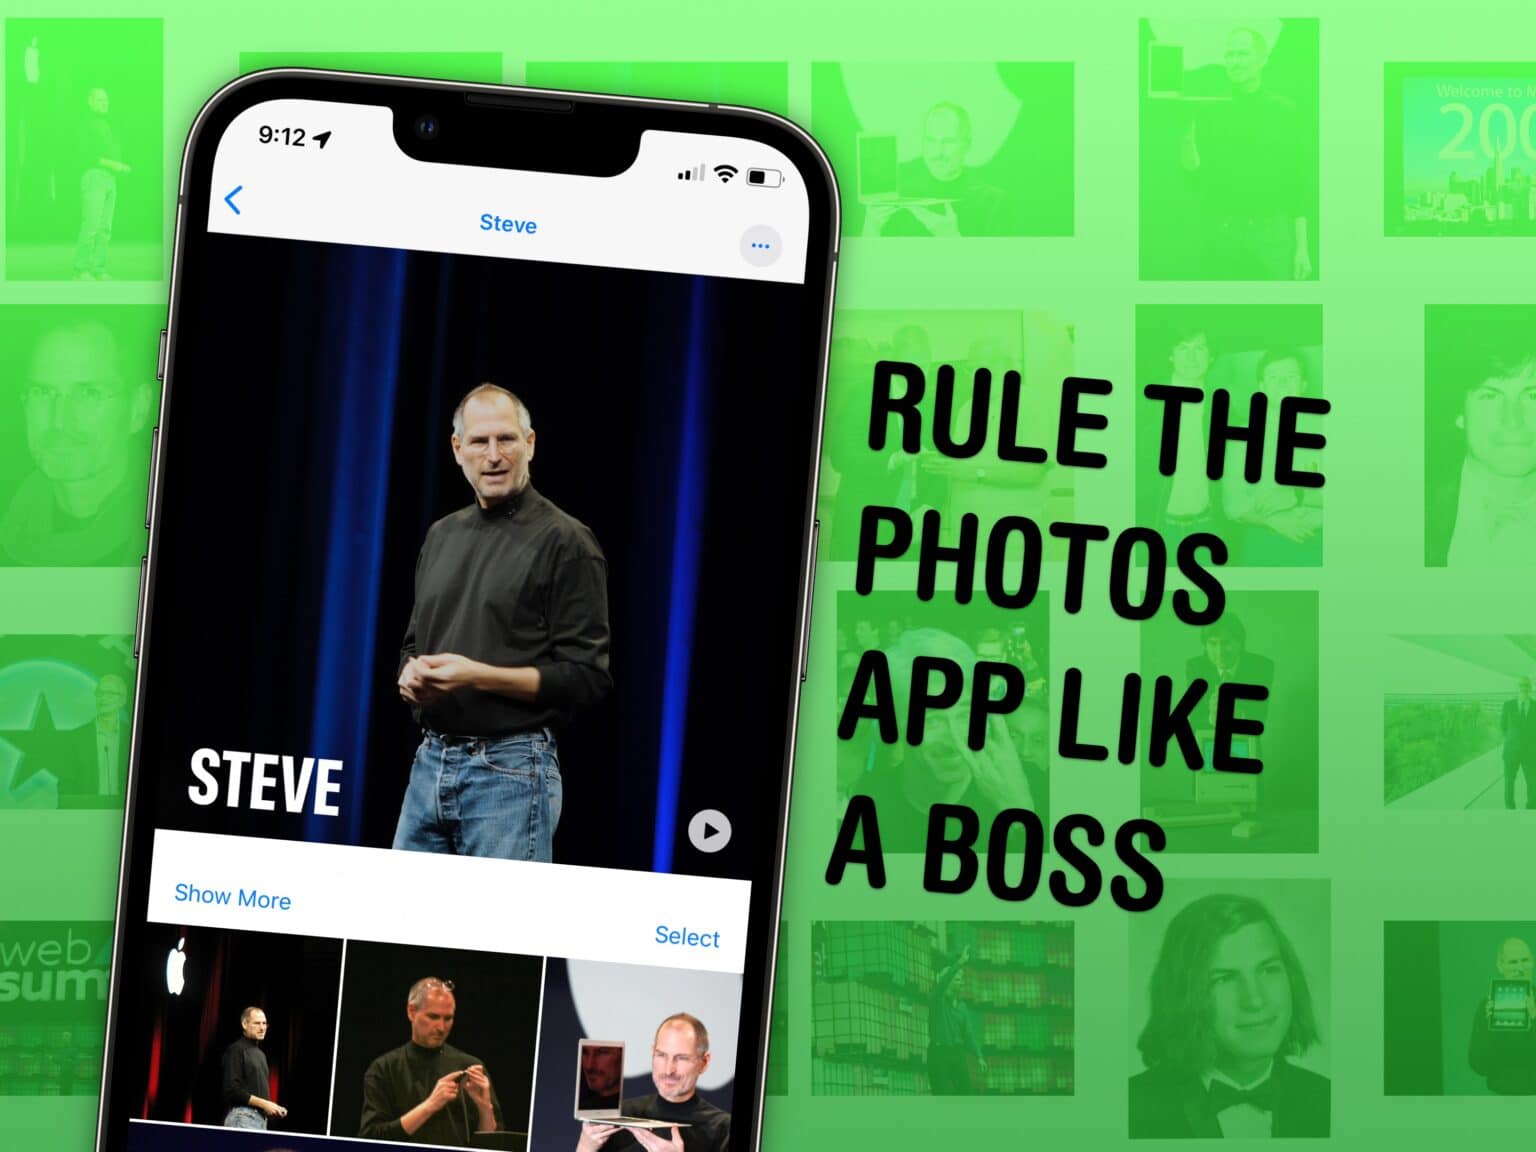 Rule the Photos App Like A Boss